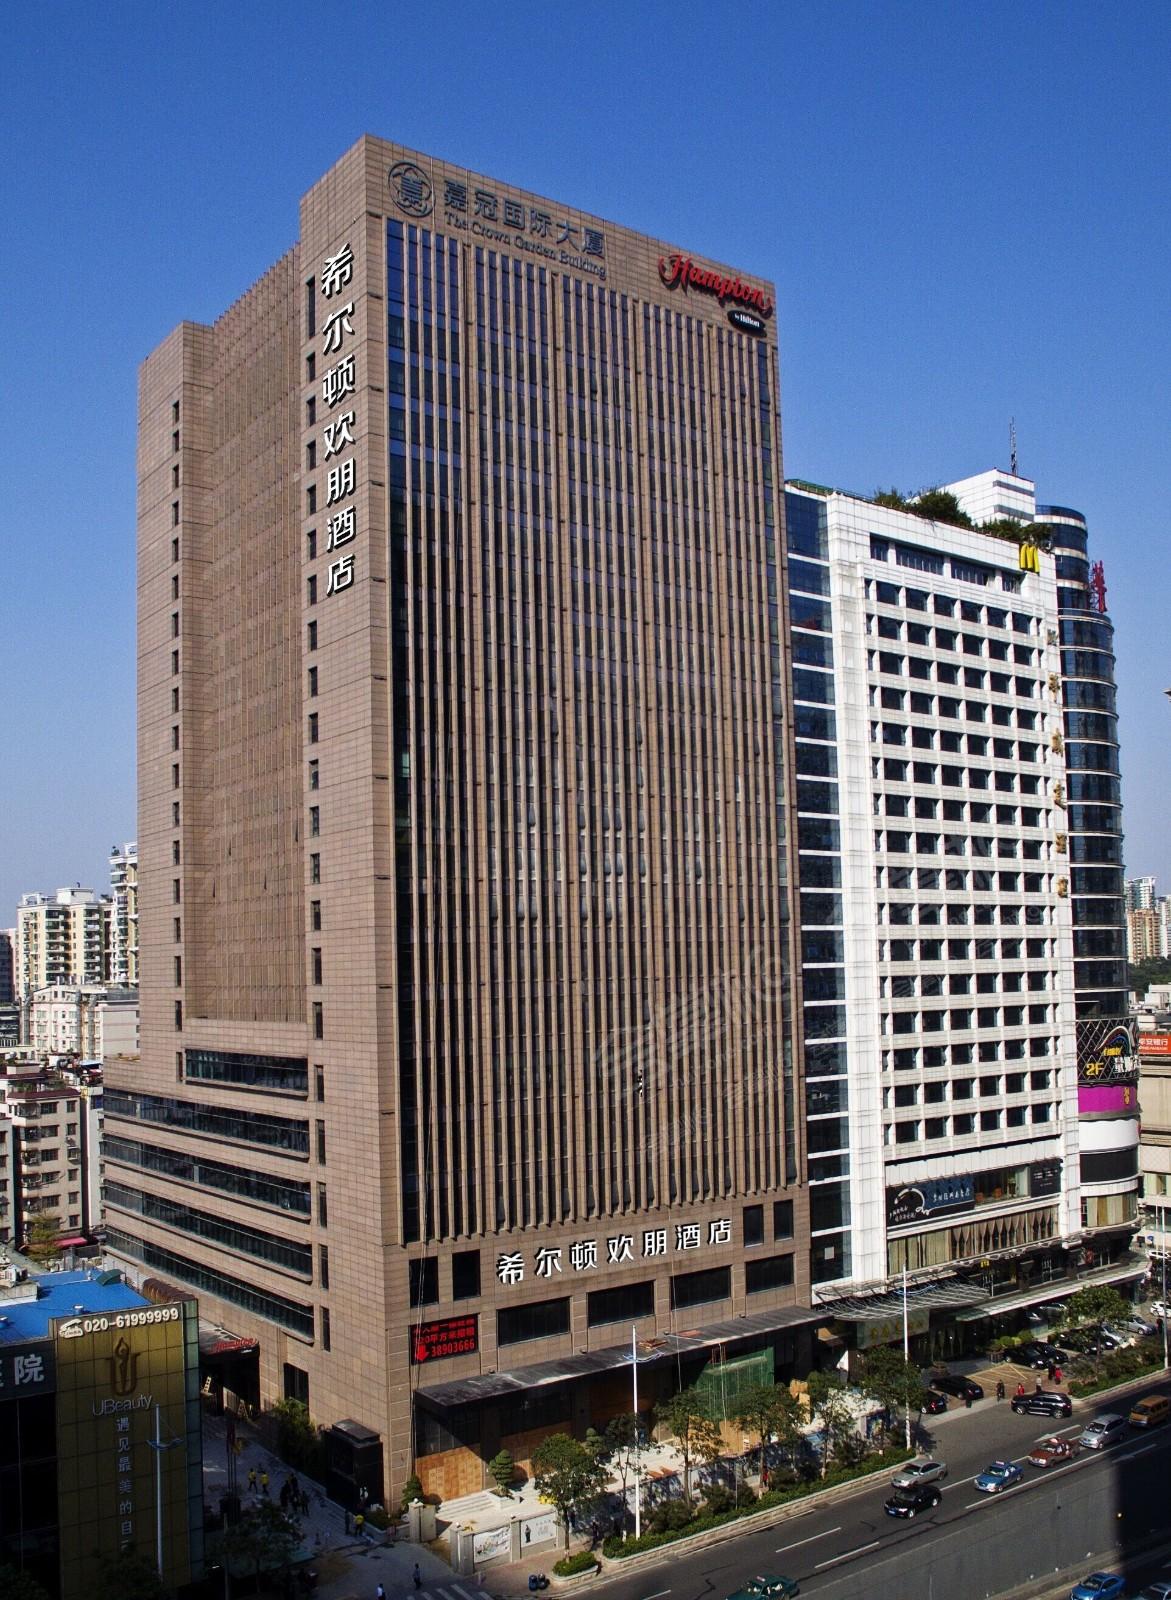 广州四星级酒店最大容纳120人的会议场地|广州珠江新城希尔顿欢朋酒店的价格与联系方式